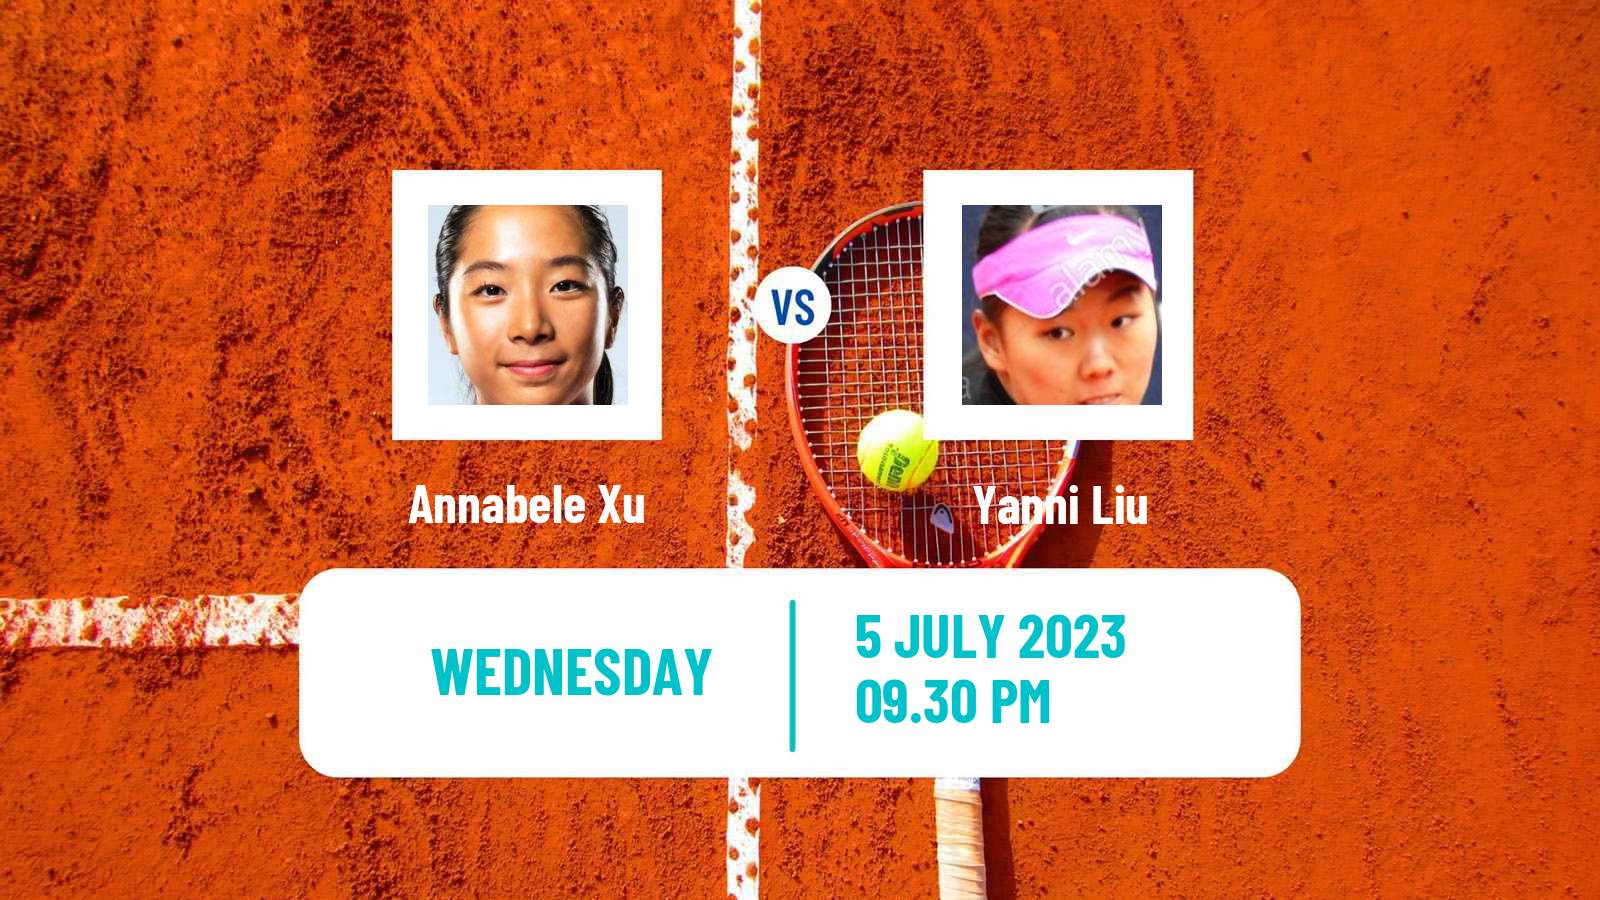 Tennis ITF W15 Tianjin 4 Women Annabele Xu - Yanni Liu